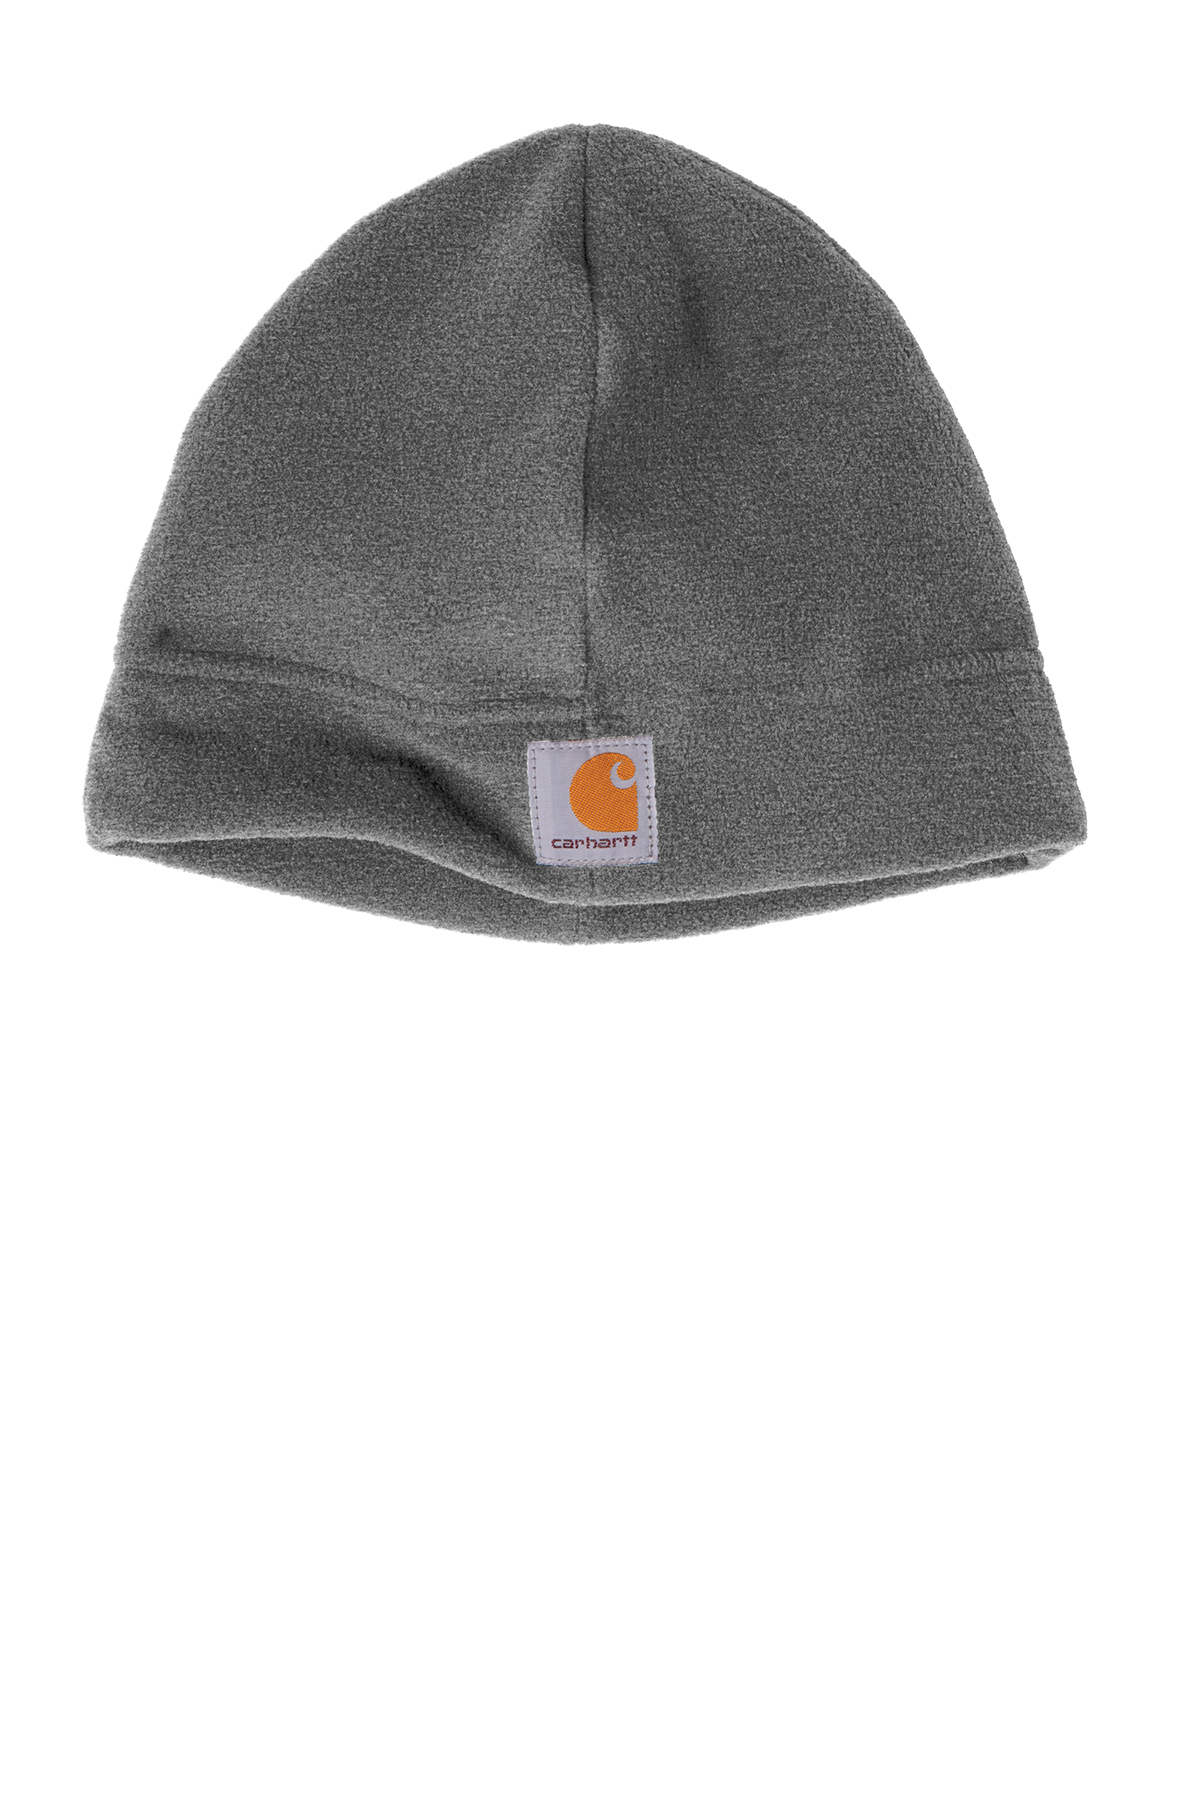 Carhartt® Fleece Beanie Hat. CTA207.